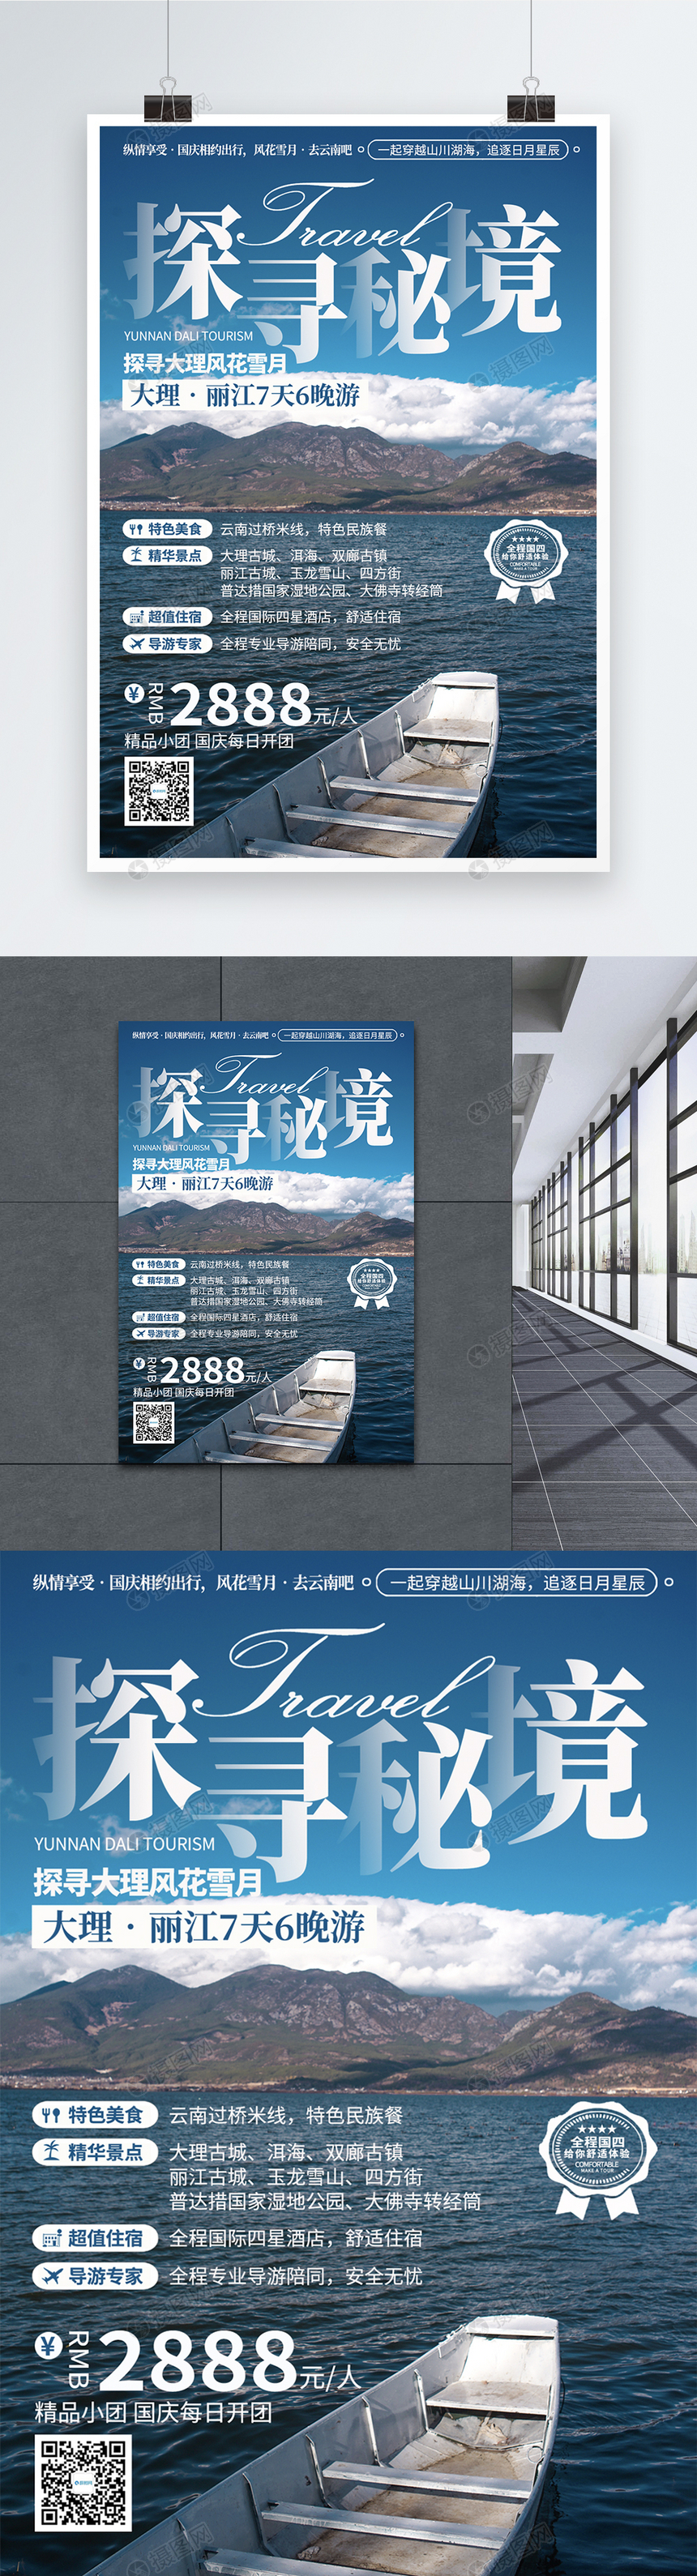 云南旅游宣传海报图片